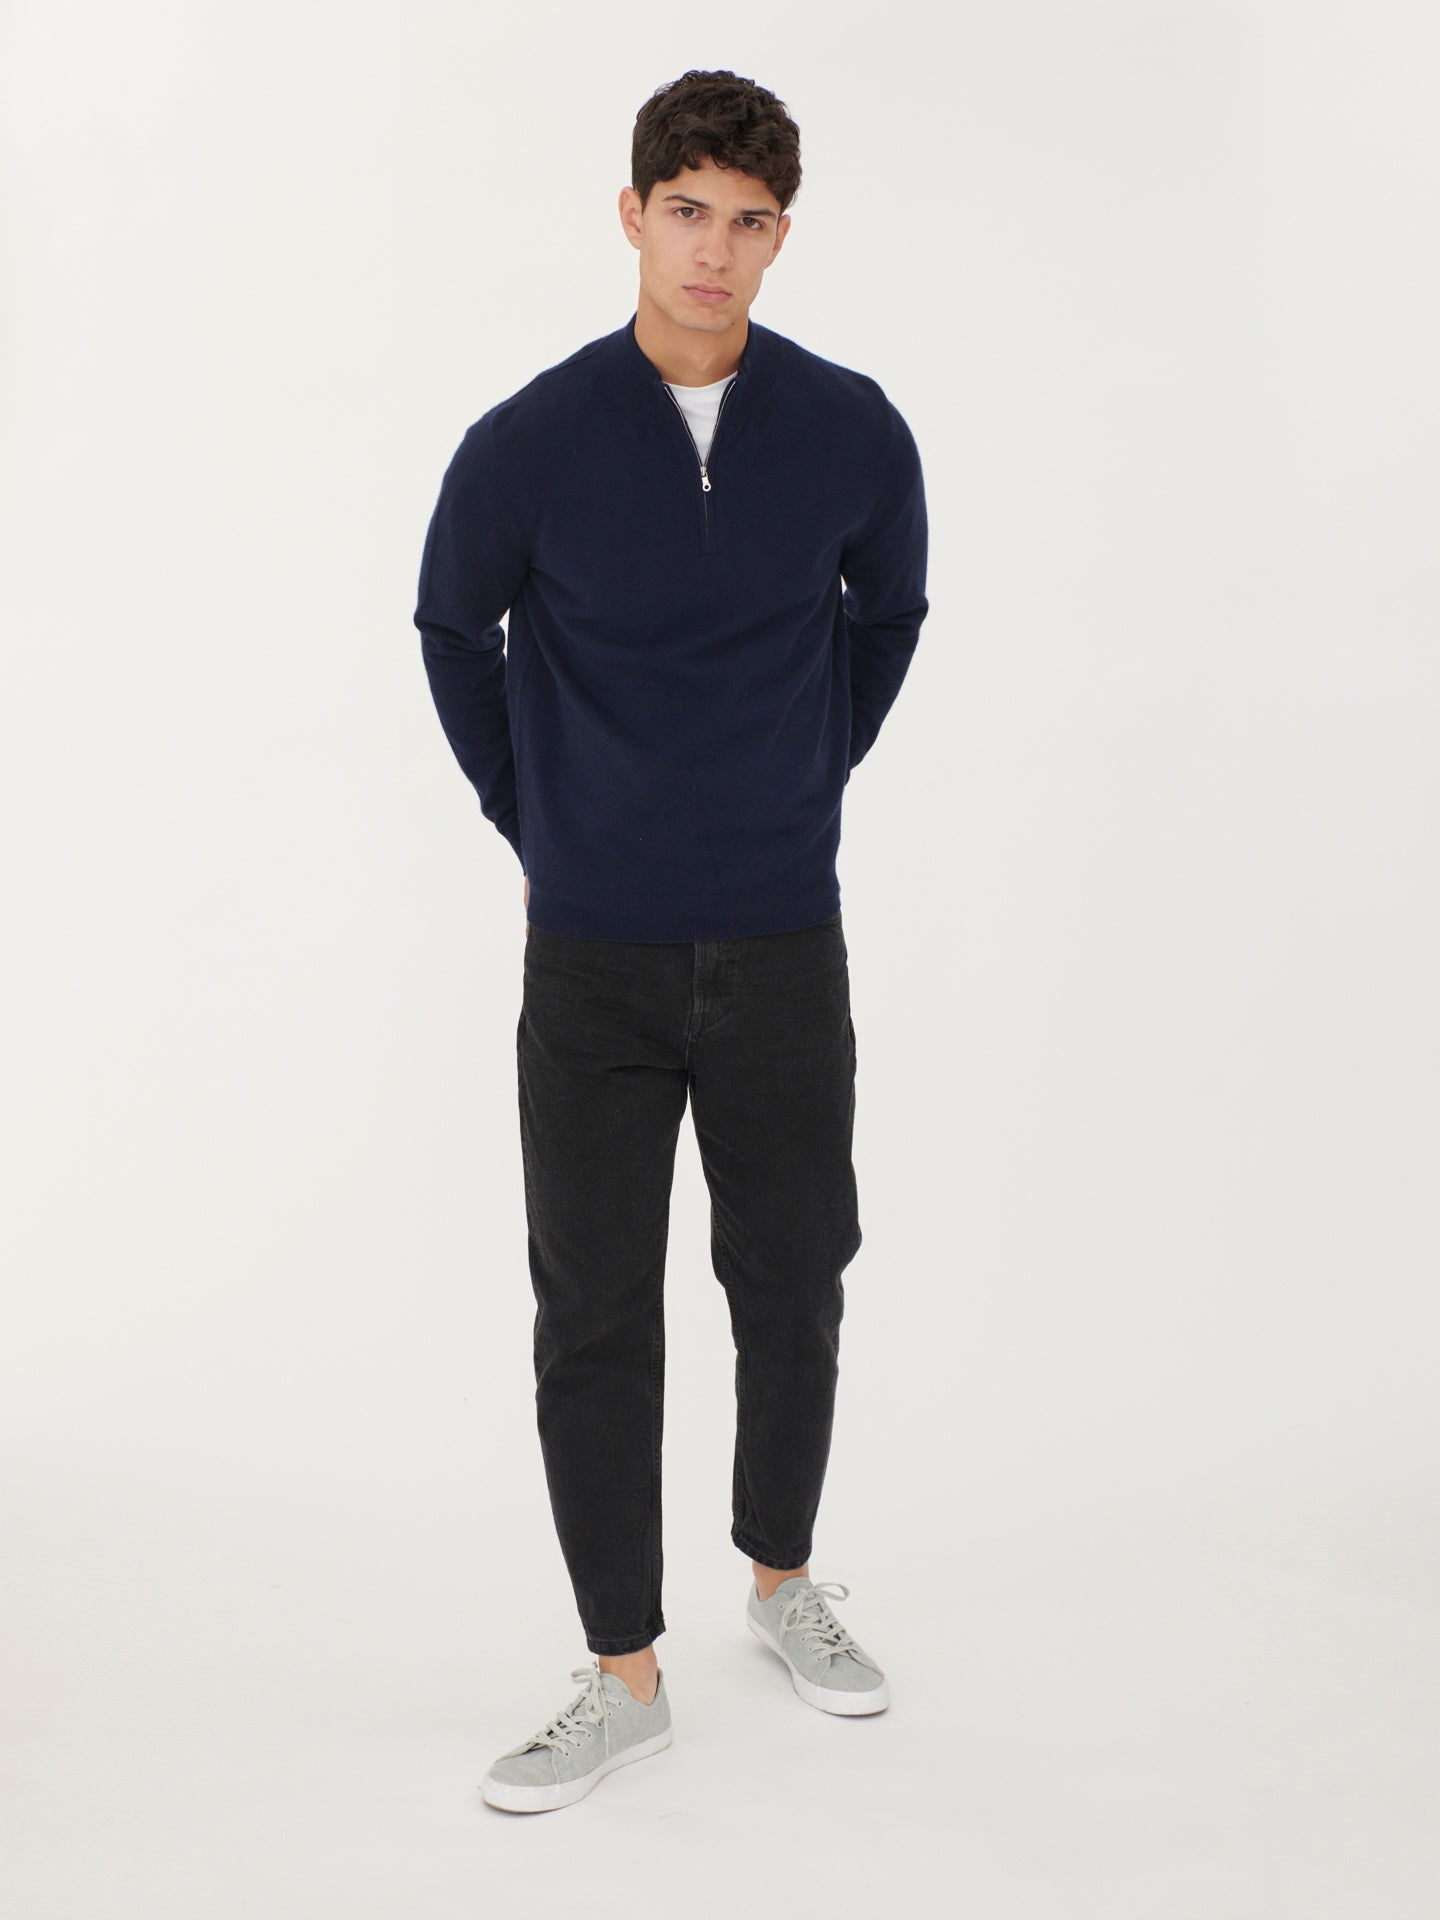 Men's Cashmere Half Zip Sweater Navy - Gobi Cashmere